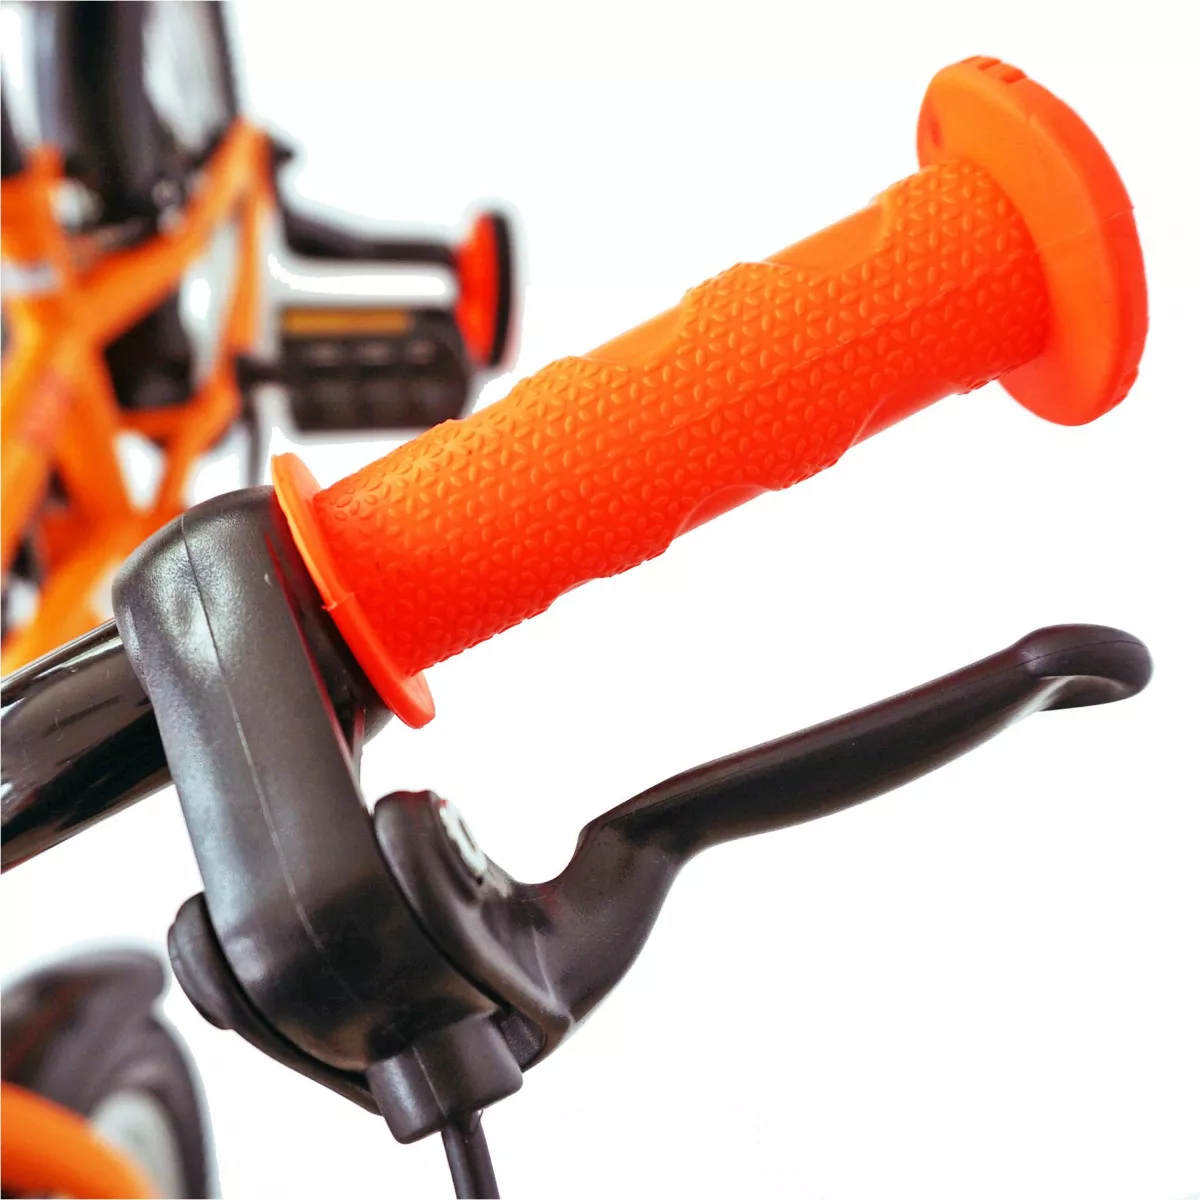 Bicicleta baieti VELORS V1401A, roata 14", C-Brake, roti ajutatoare, 3-5 ani, portocaliu/negru 